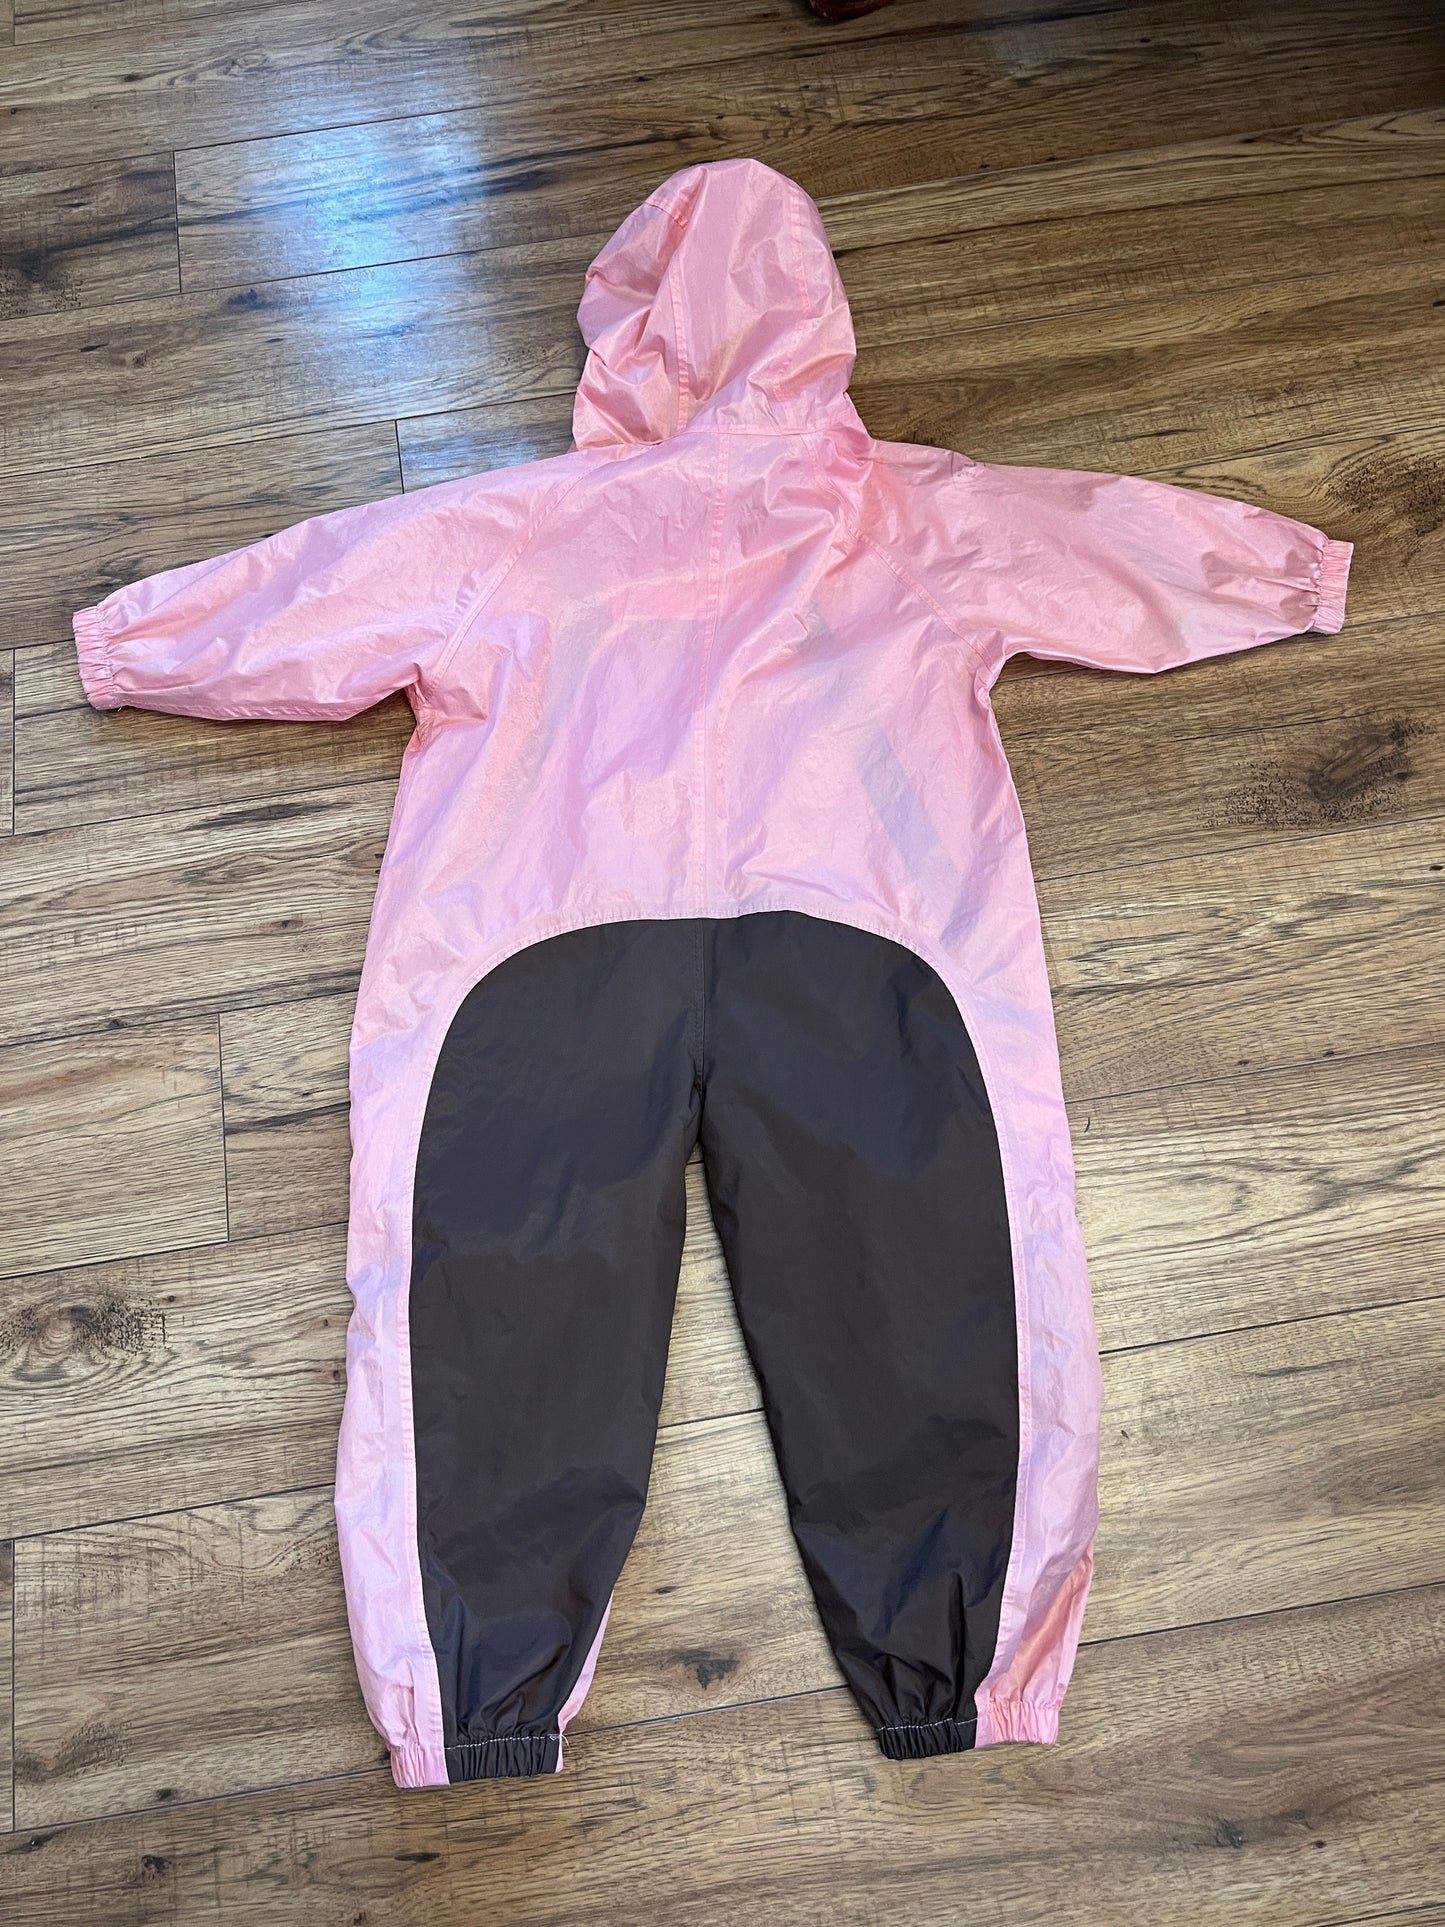 Rain Suit Child Size 4 Muddy Buddy Tuffo Pink